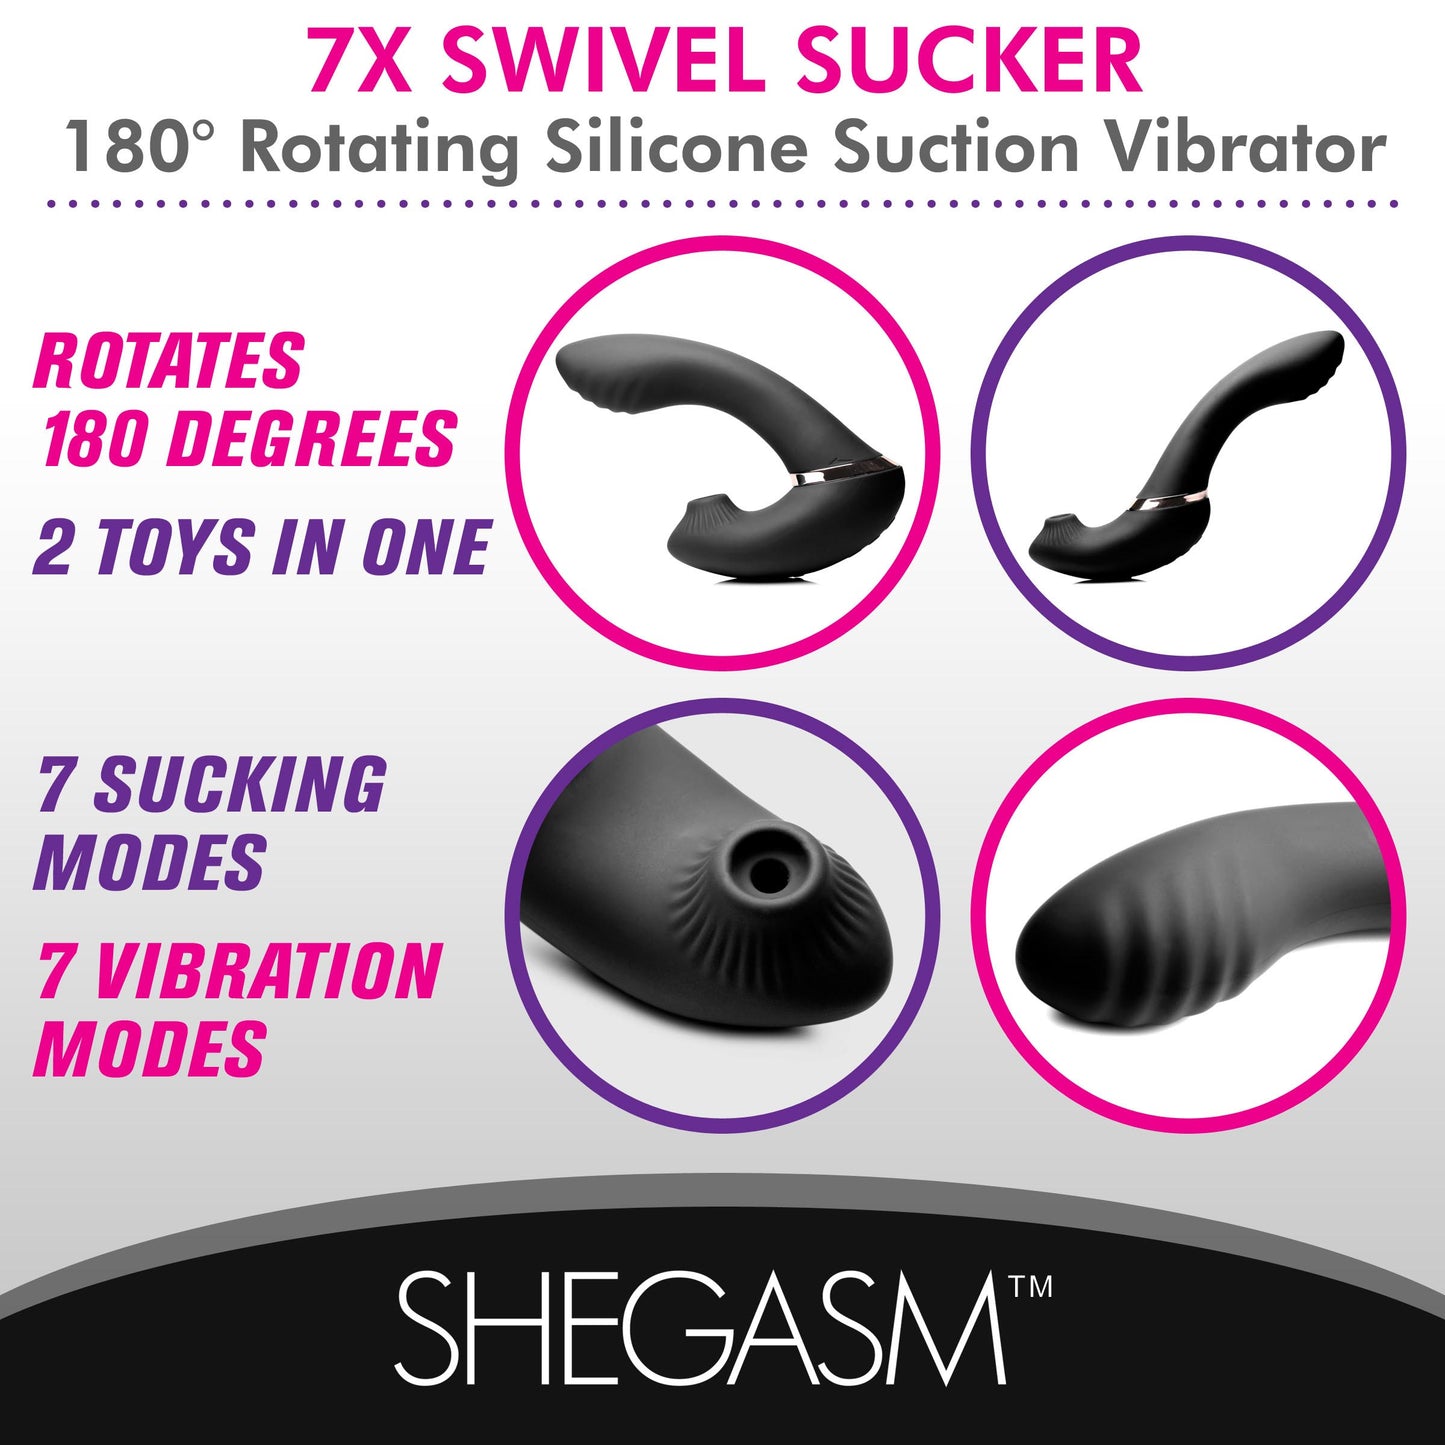 7X Swivel Sucker 180 Rotating Silicone Suction Vibrator - UABDSM